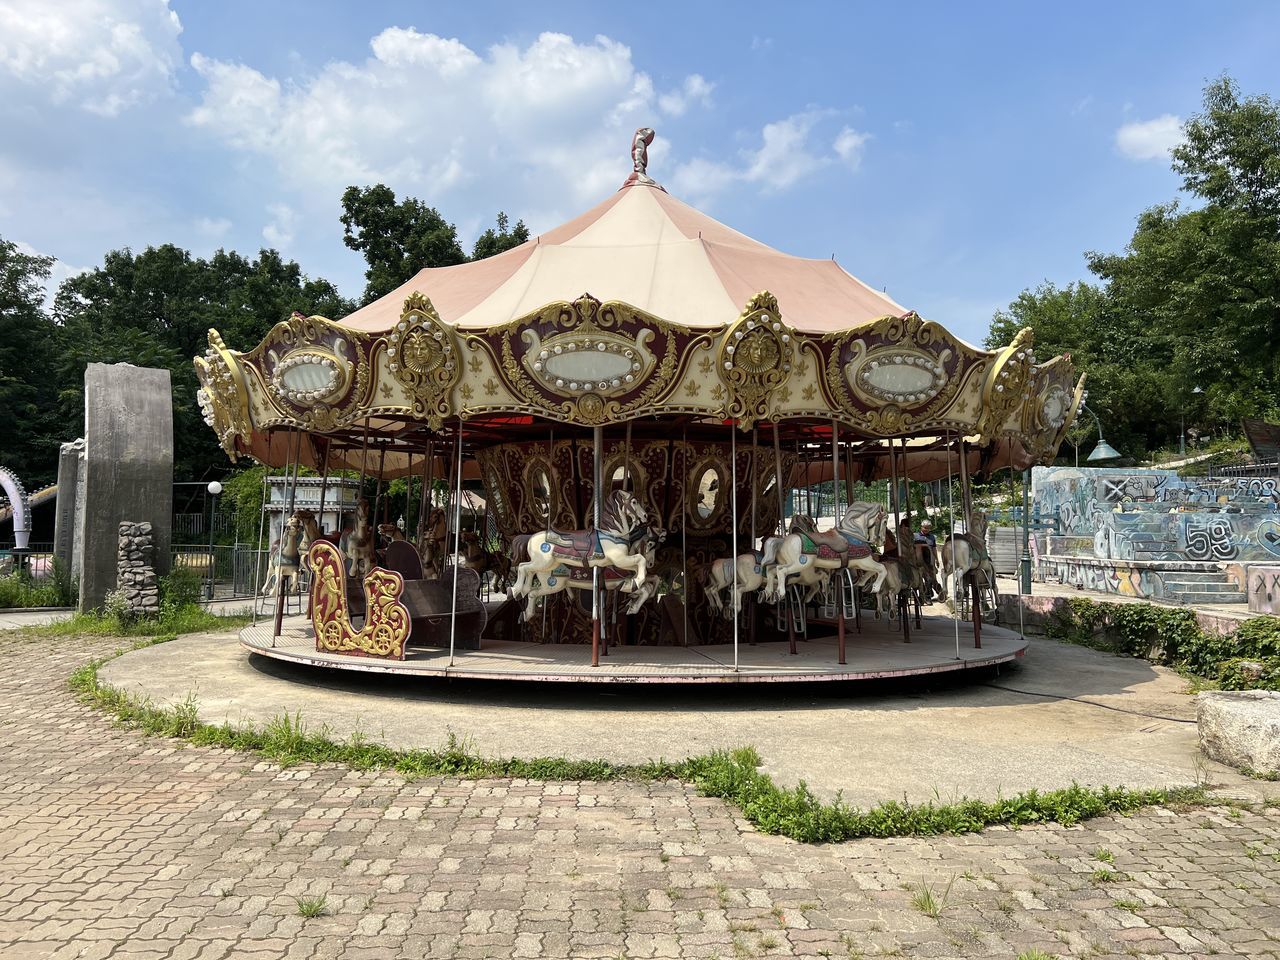 Abandoned amusement park